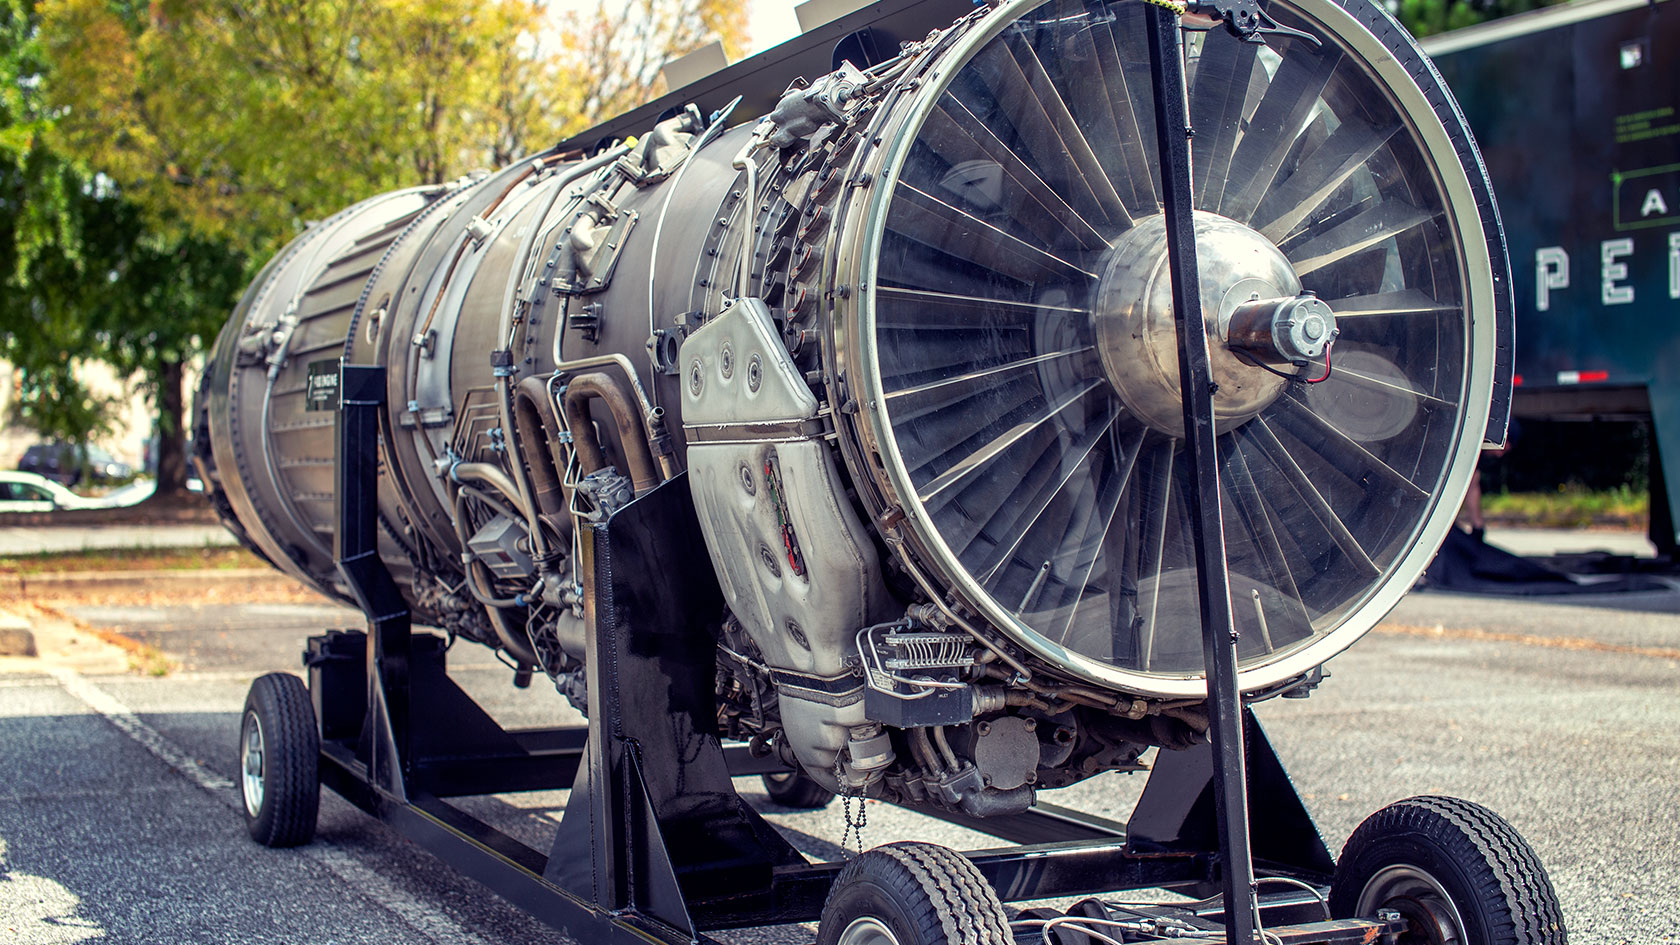 Large plane engine turbine